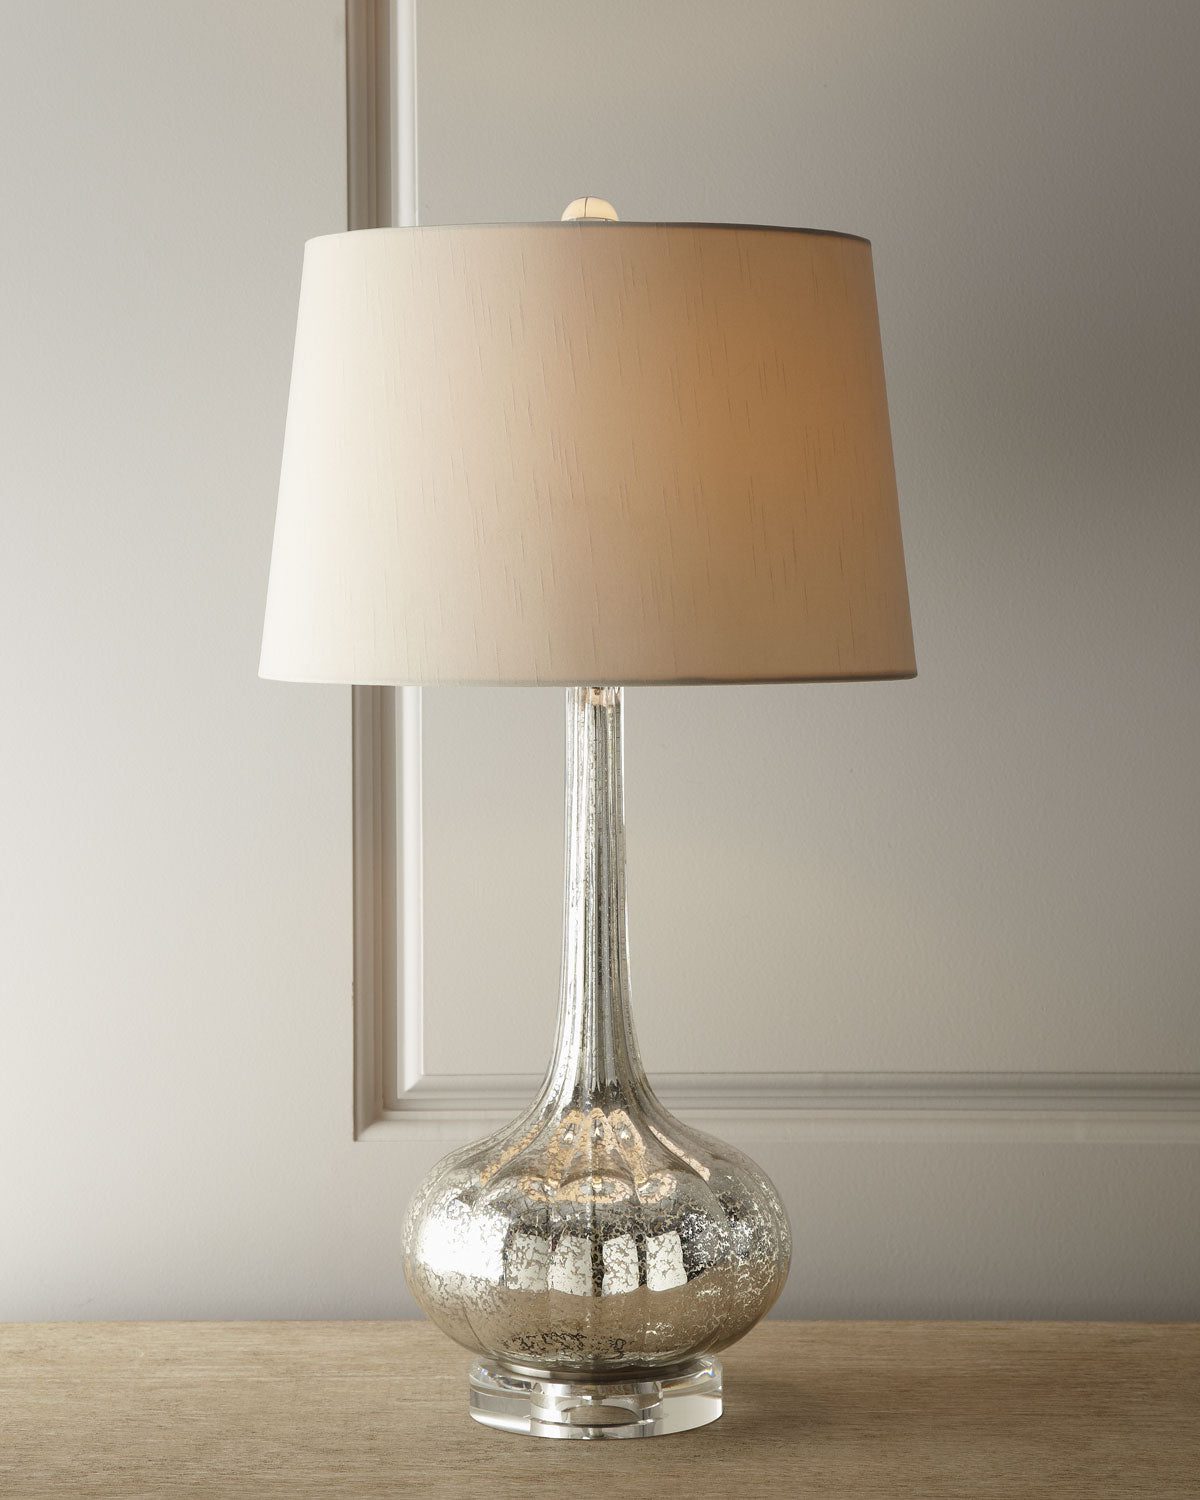 Стеклянная настольная лампа ртутного цвета в стиле неоклассики "Вилма" (в интерьере)